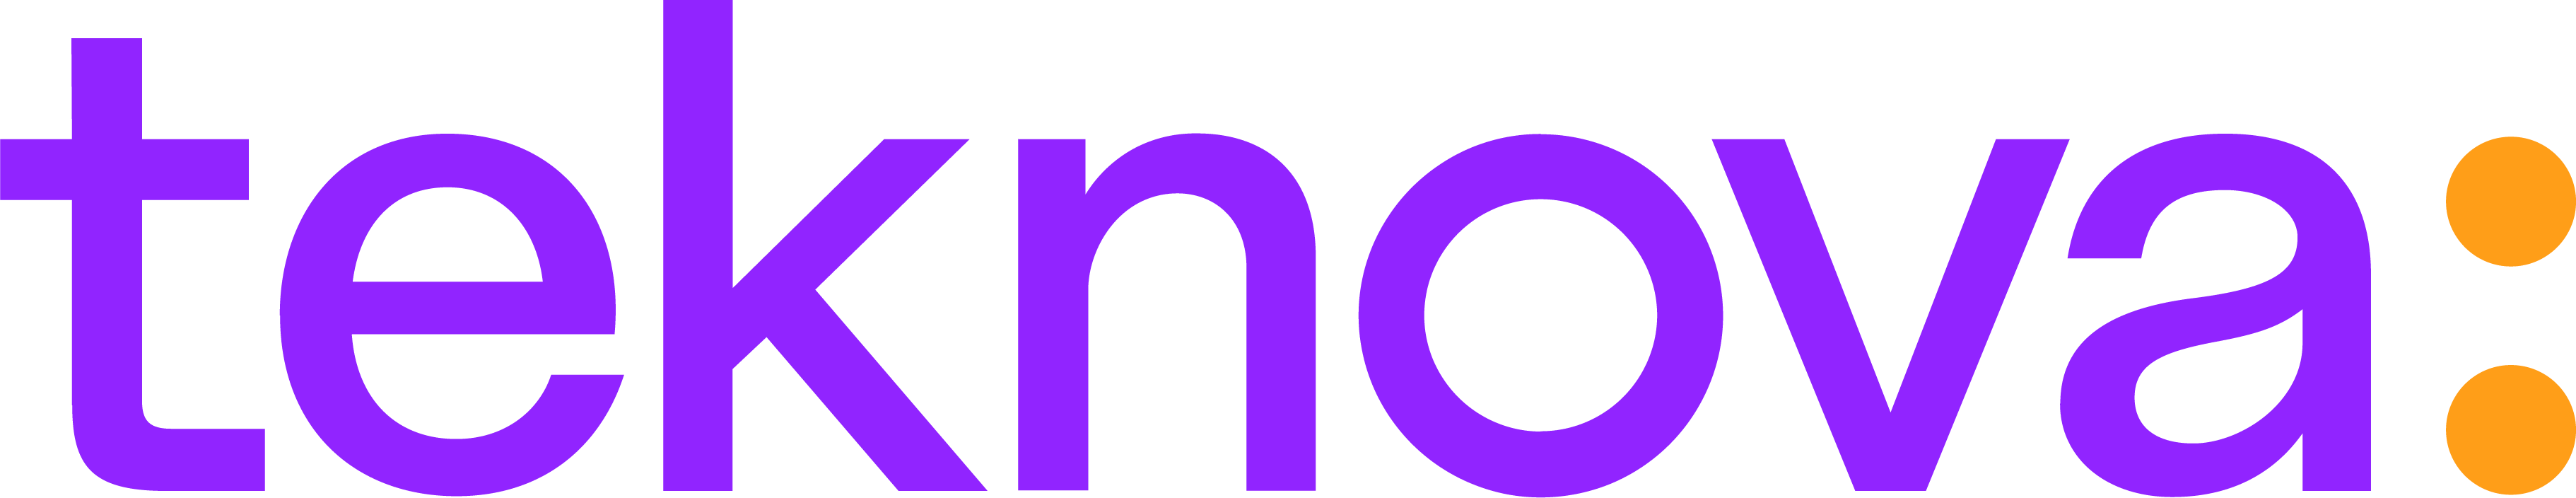 updated teknova-logo_2023.png